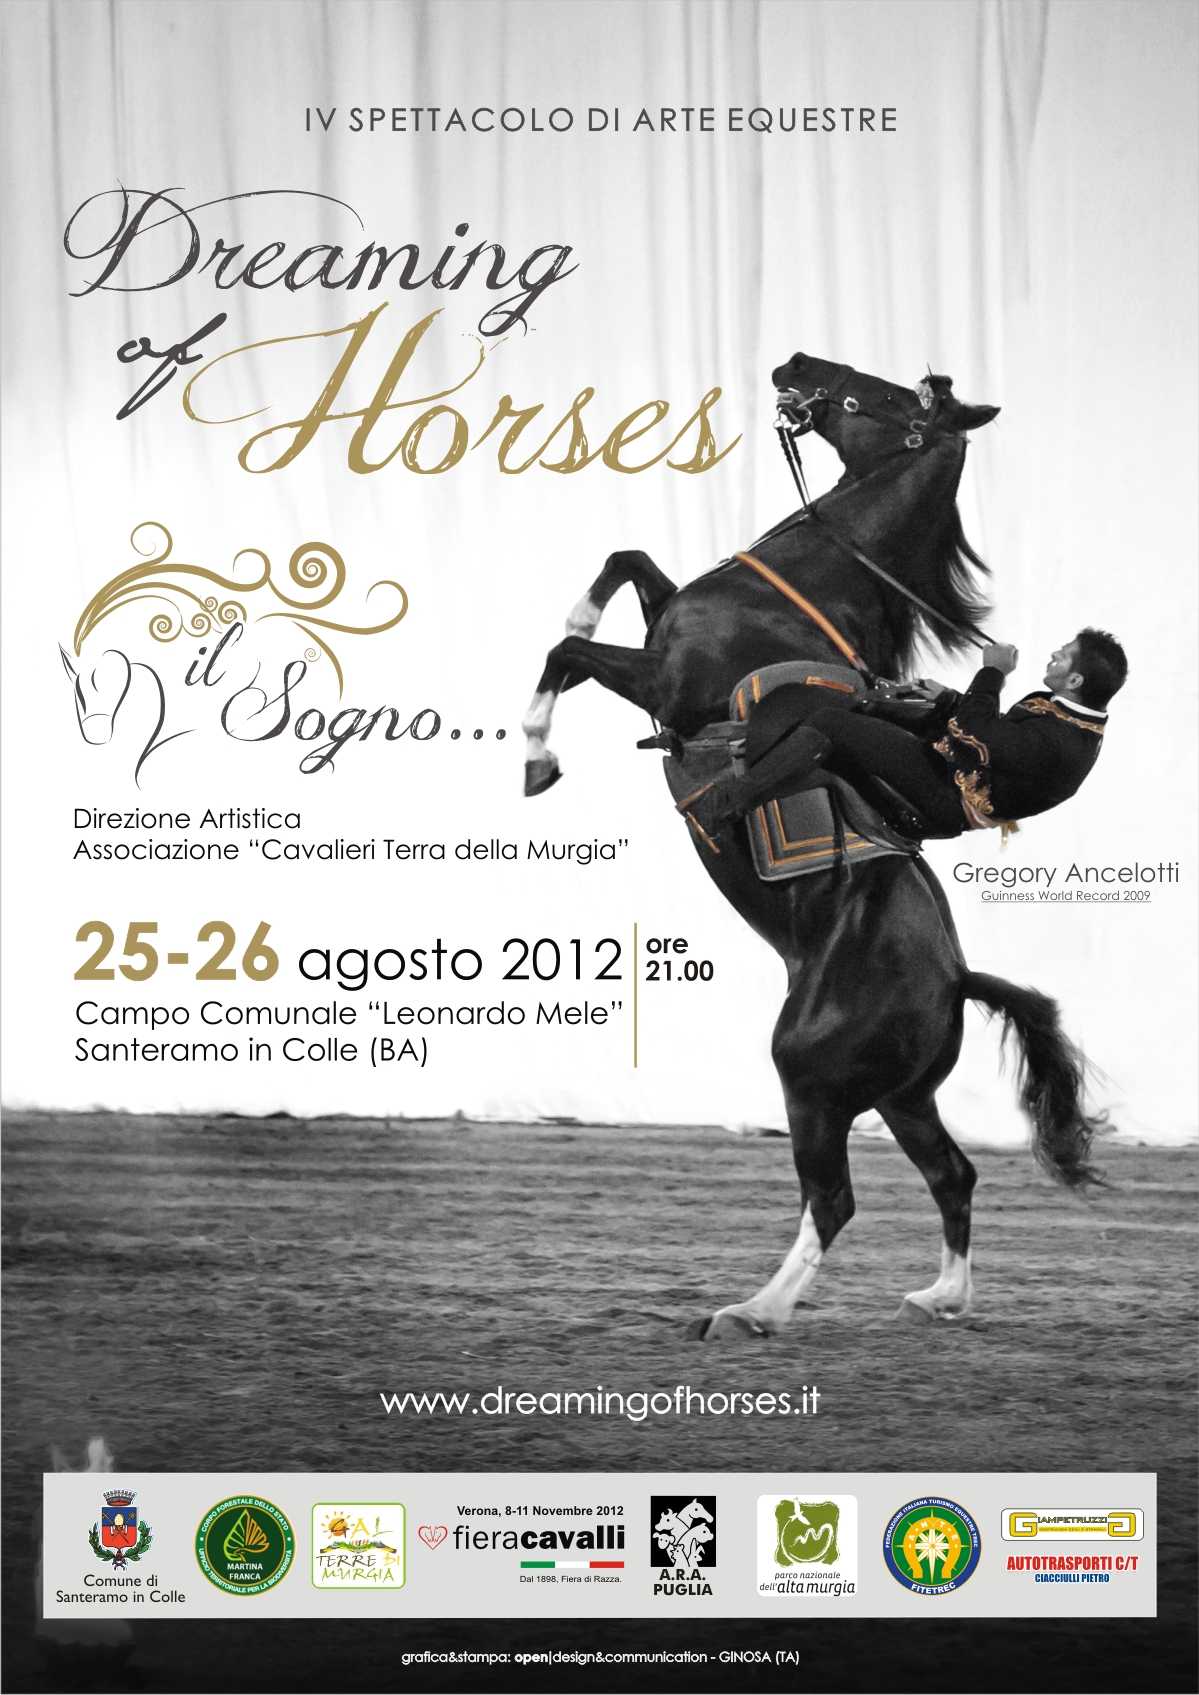 IV spettacolo di arte equestre "Dreaming Of Horses...Il Sogno"